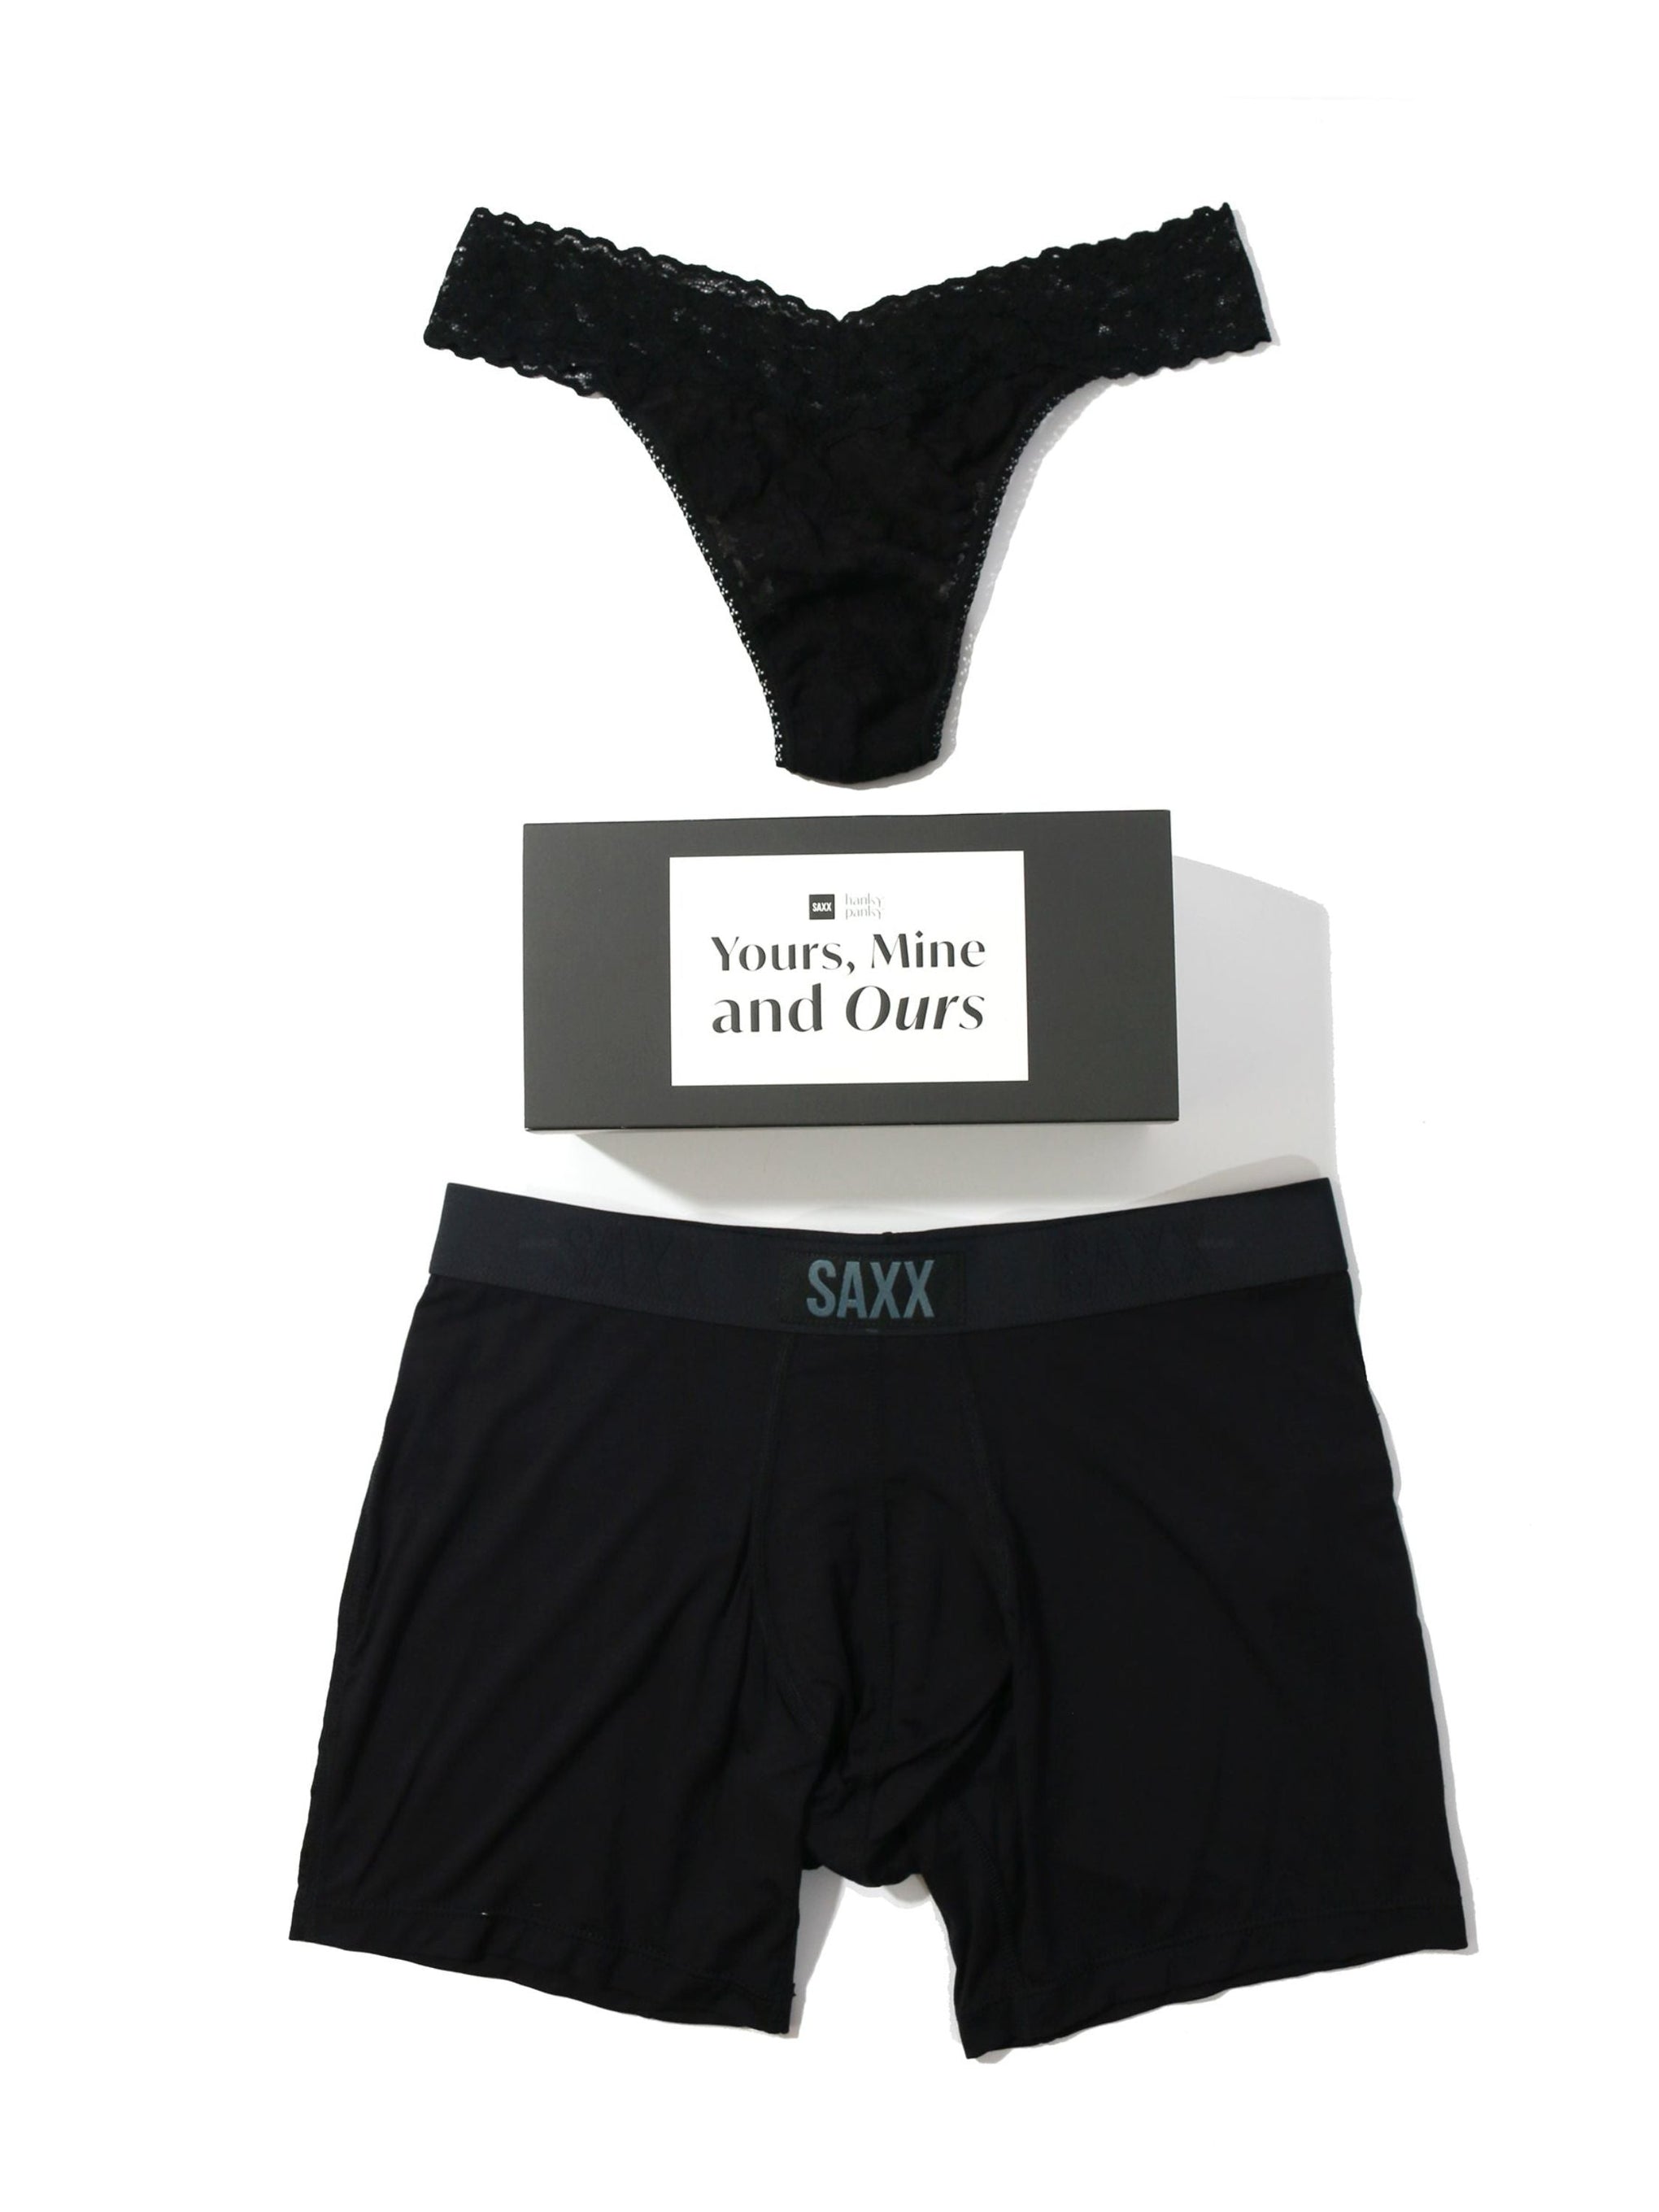 Saxx Vibe Boxer Brief - Black/Black • Find prices »